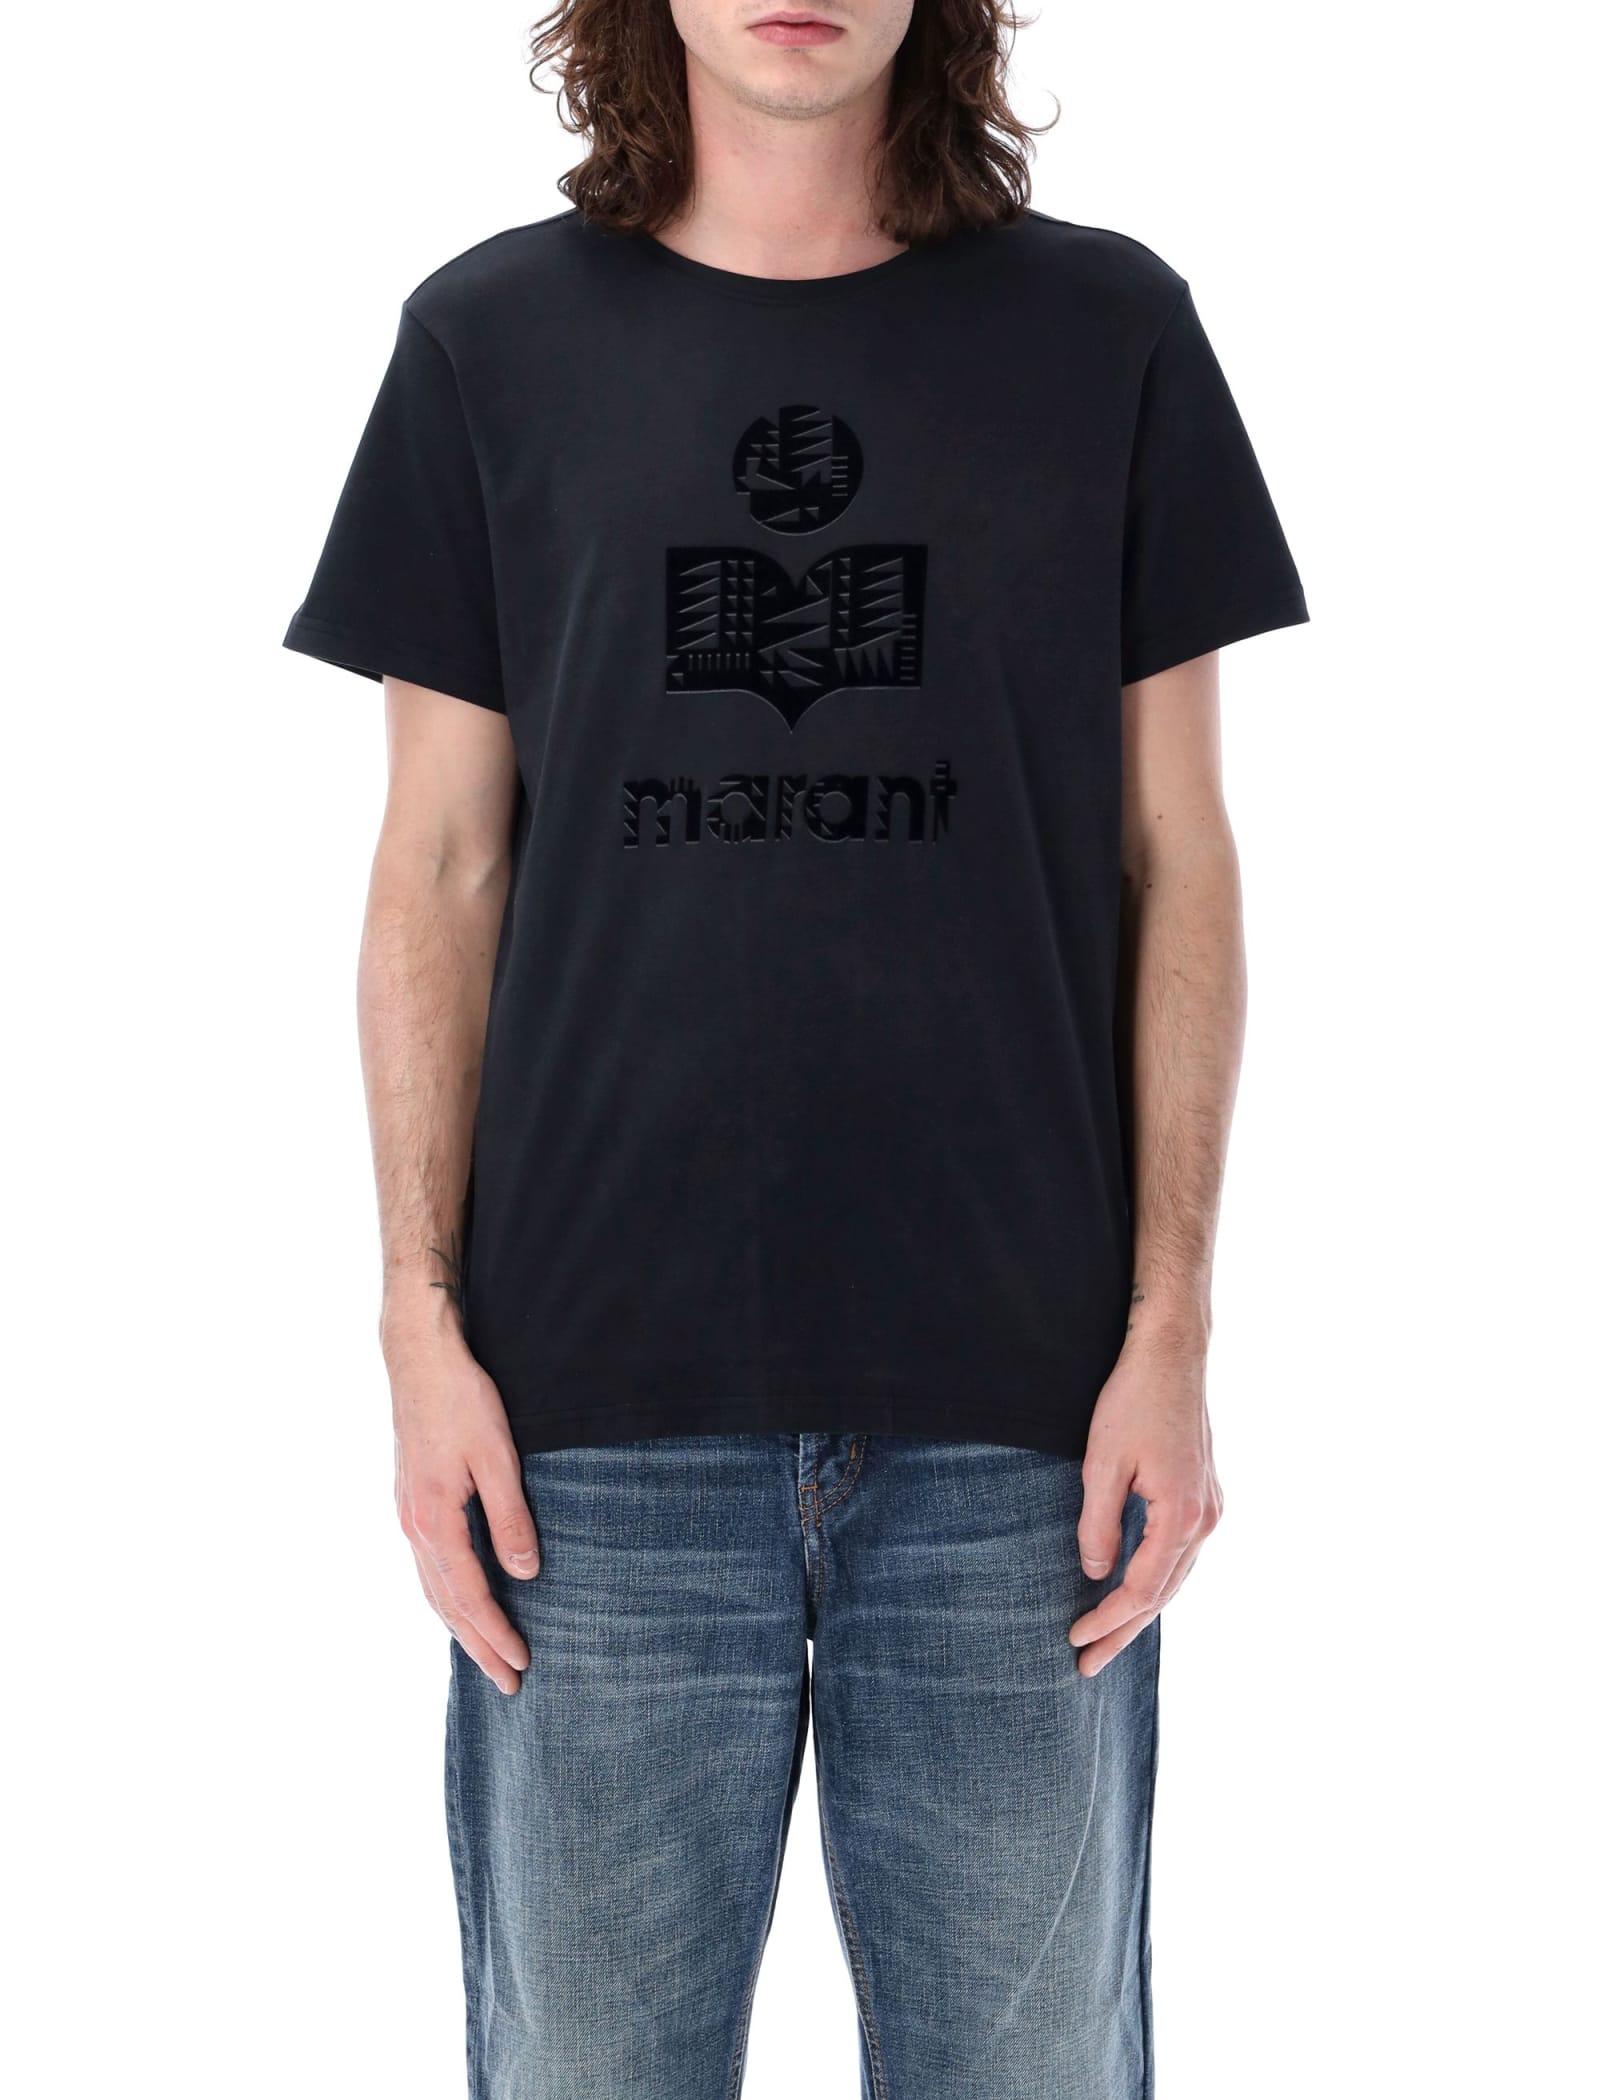 Zeffreh T-shirt